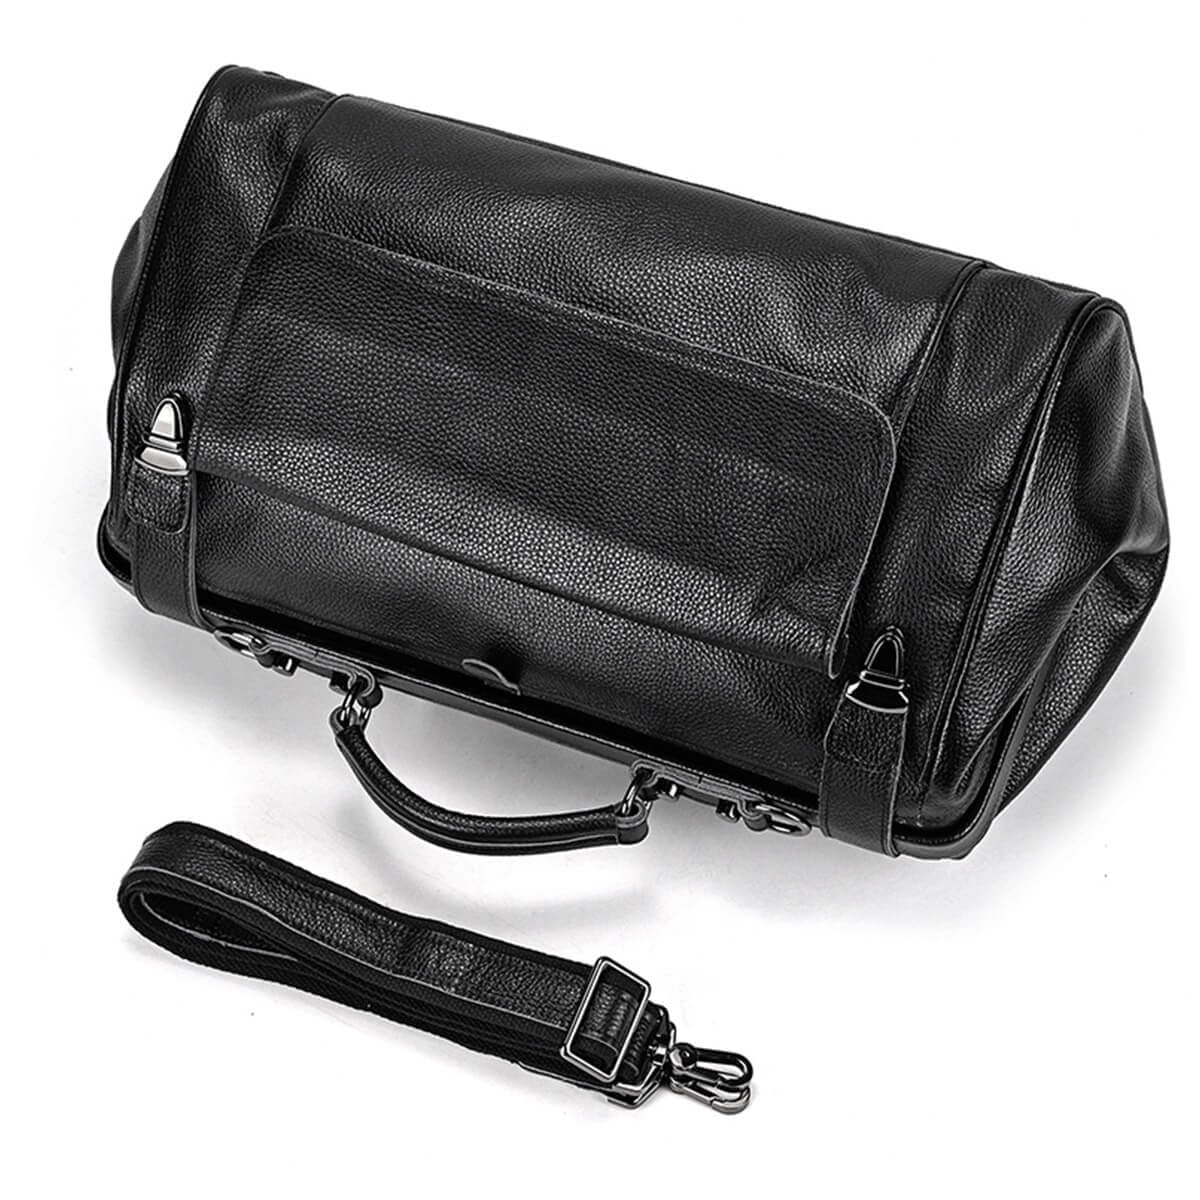 Fashionable Carry-On Bag